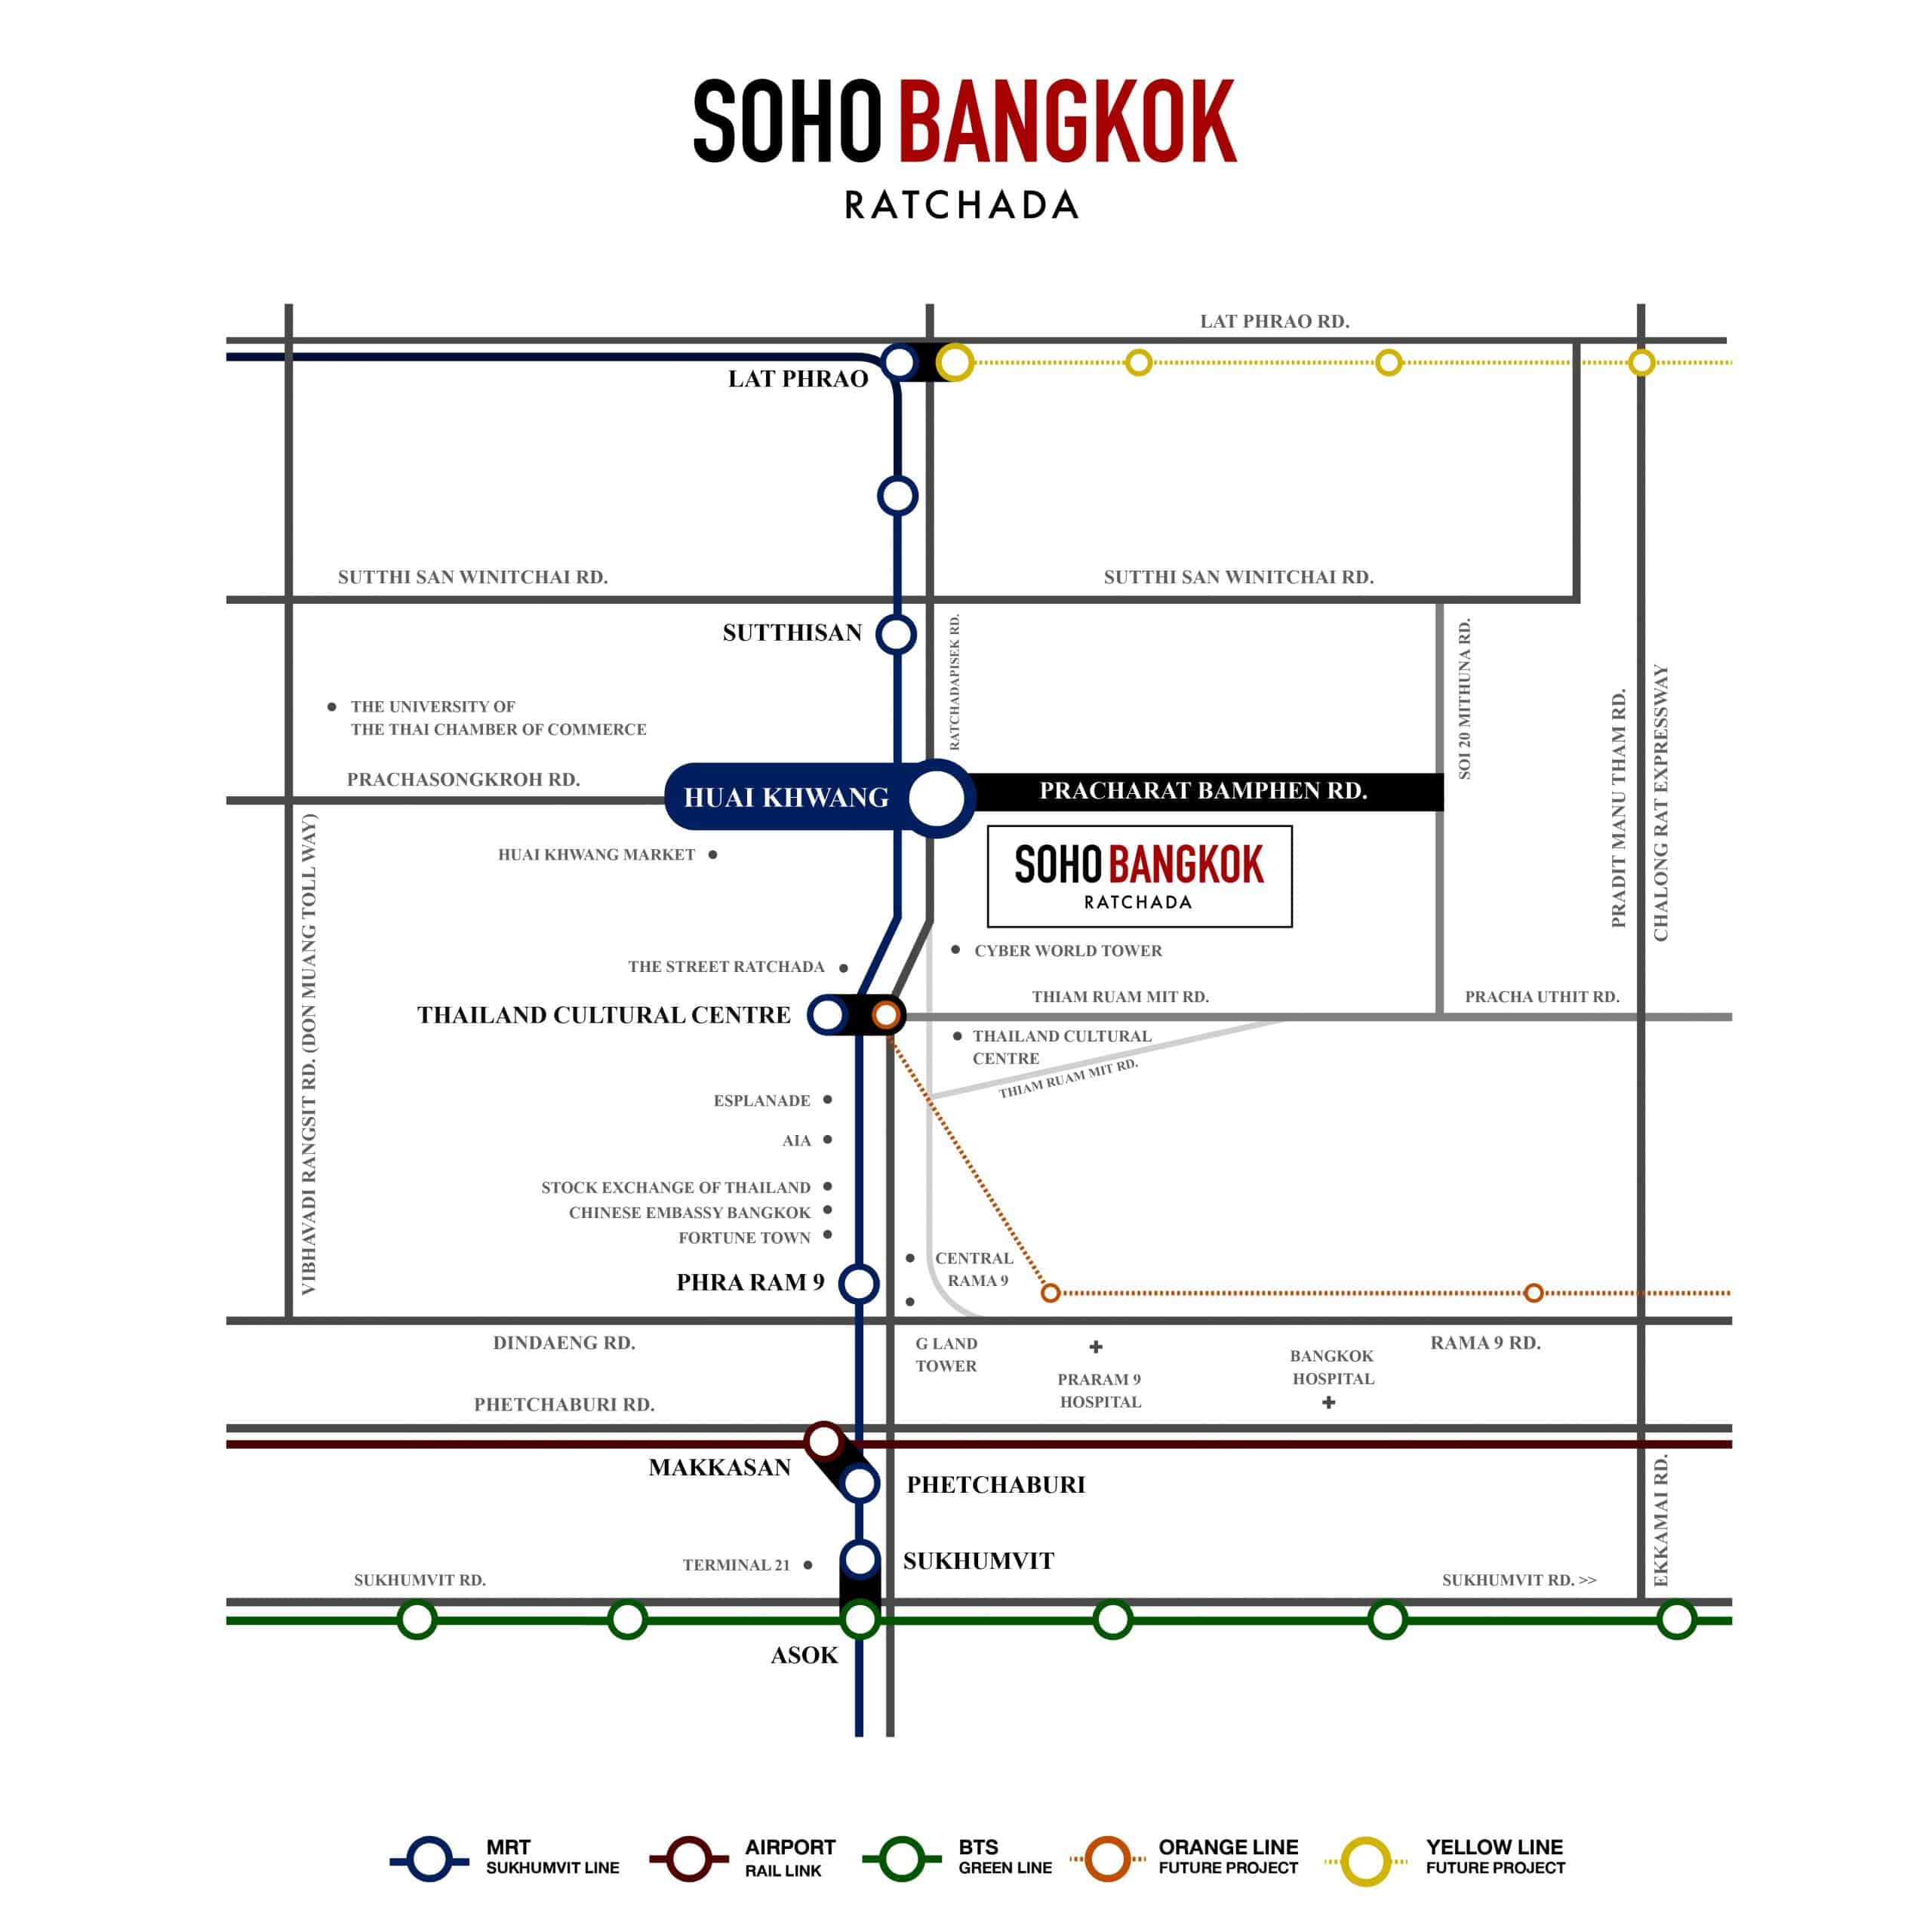 soho bangkok ratchada